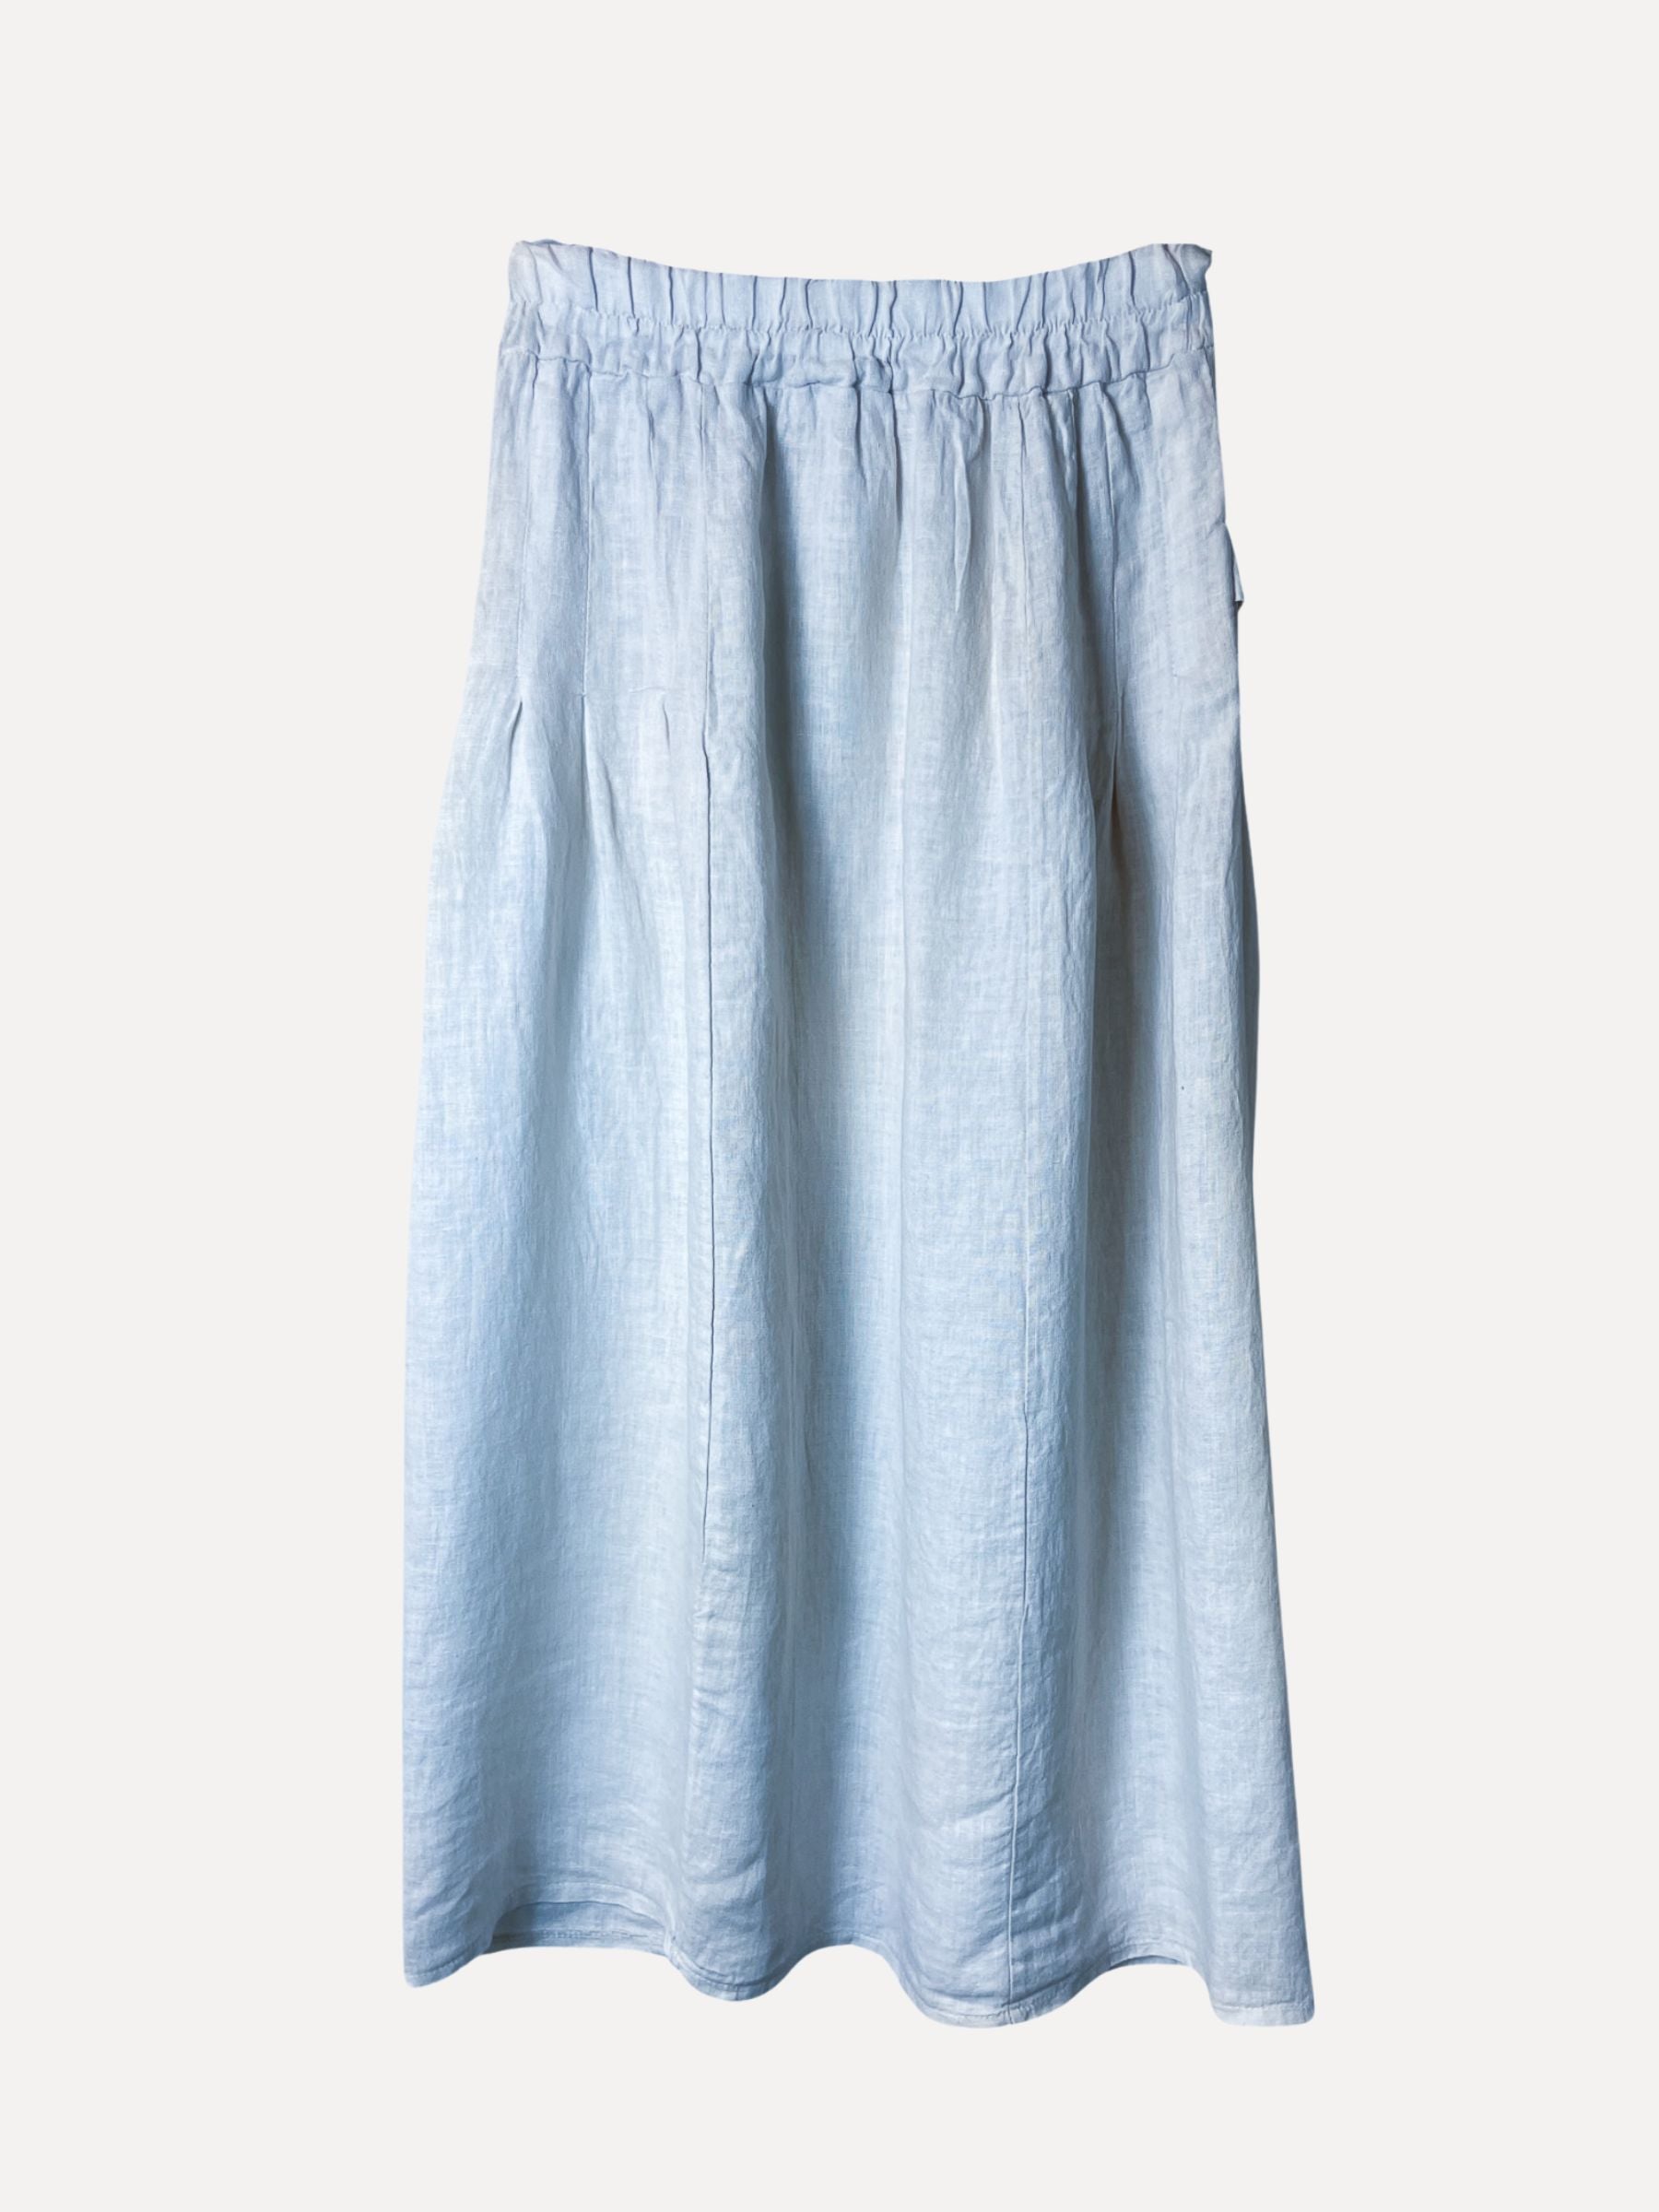 TORI Skirt, Sky Blue